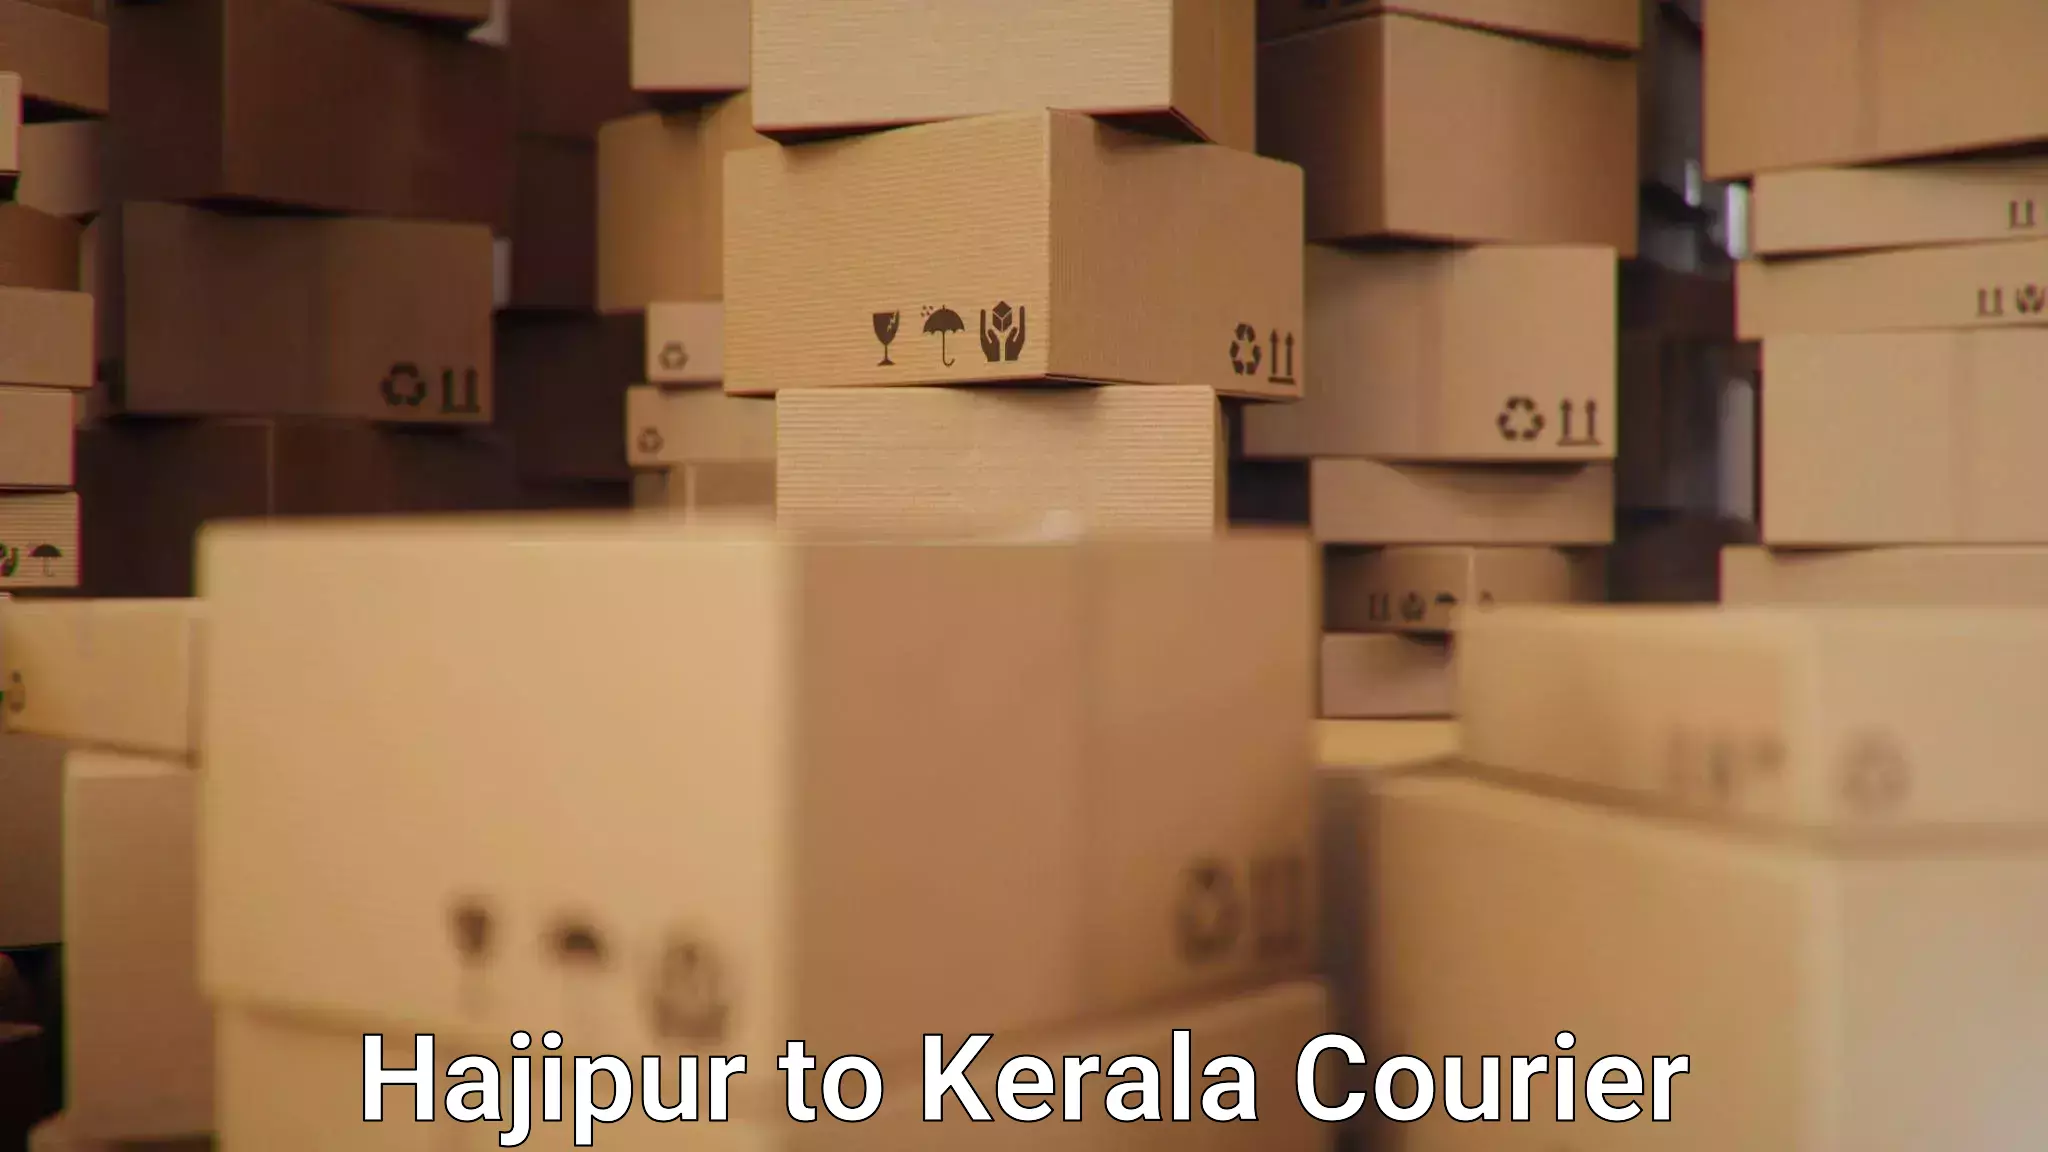 24/7 courier service Hajipur to Kerala